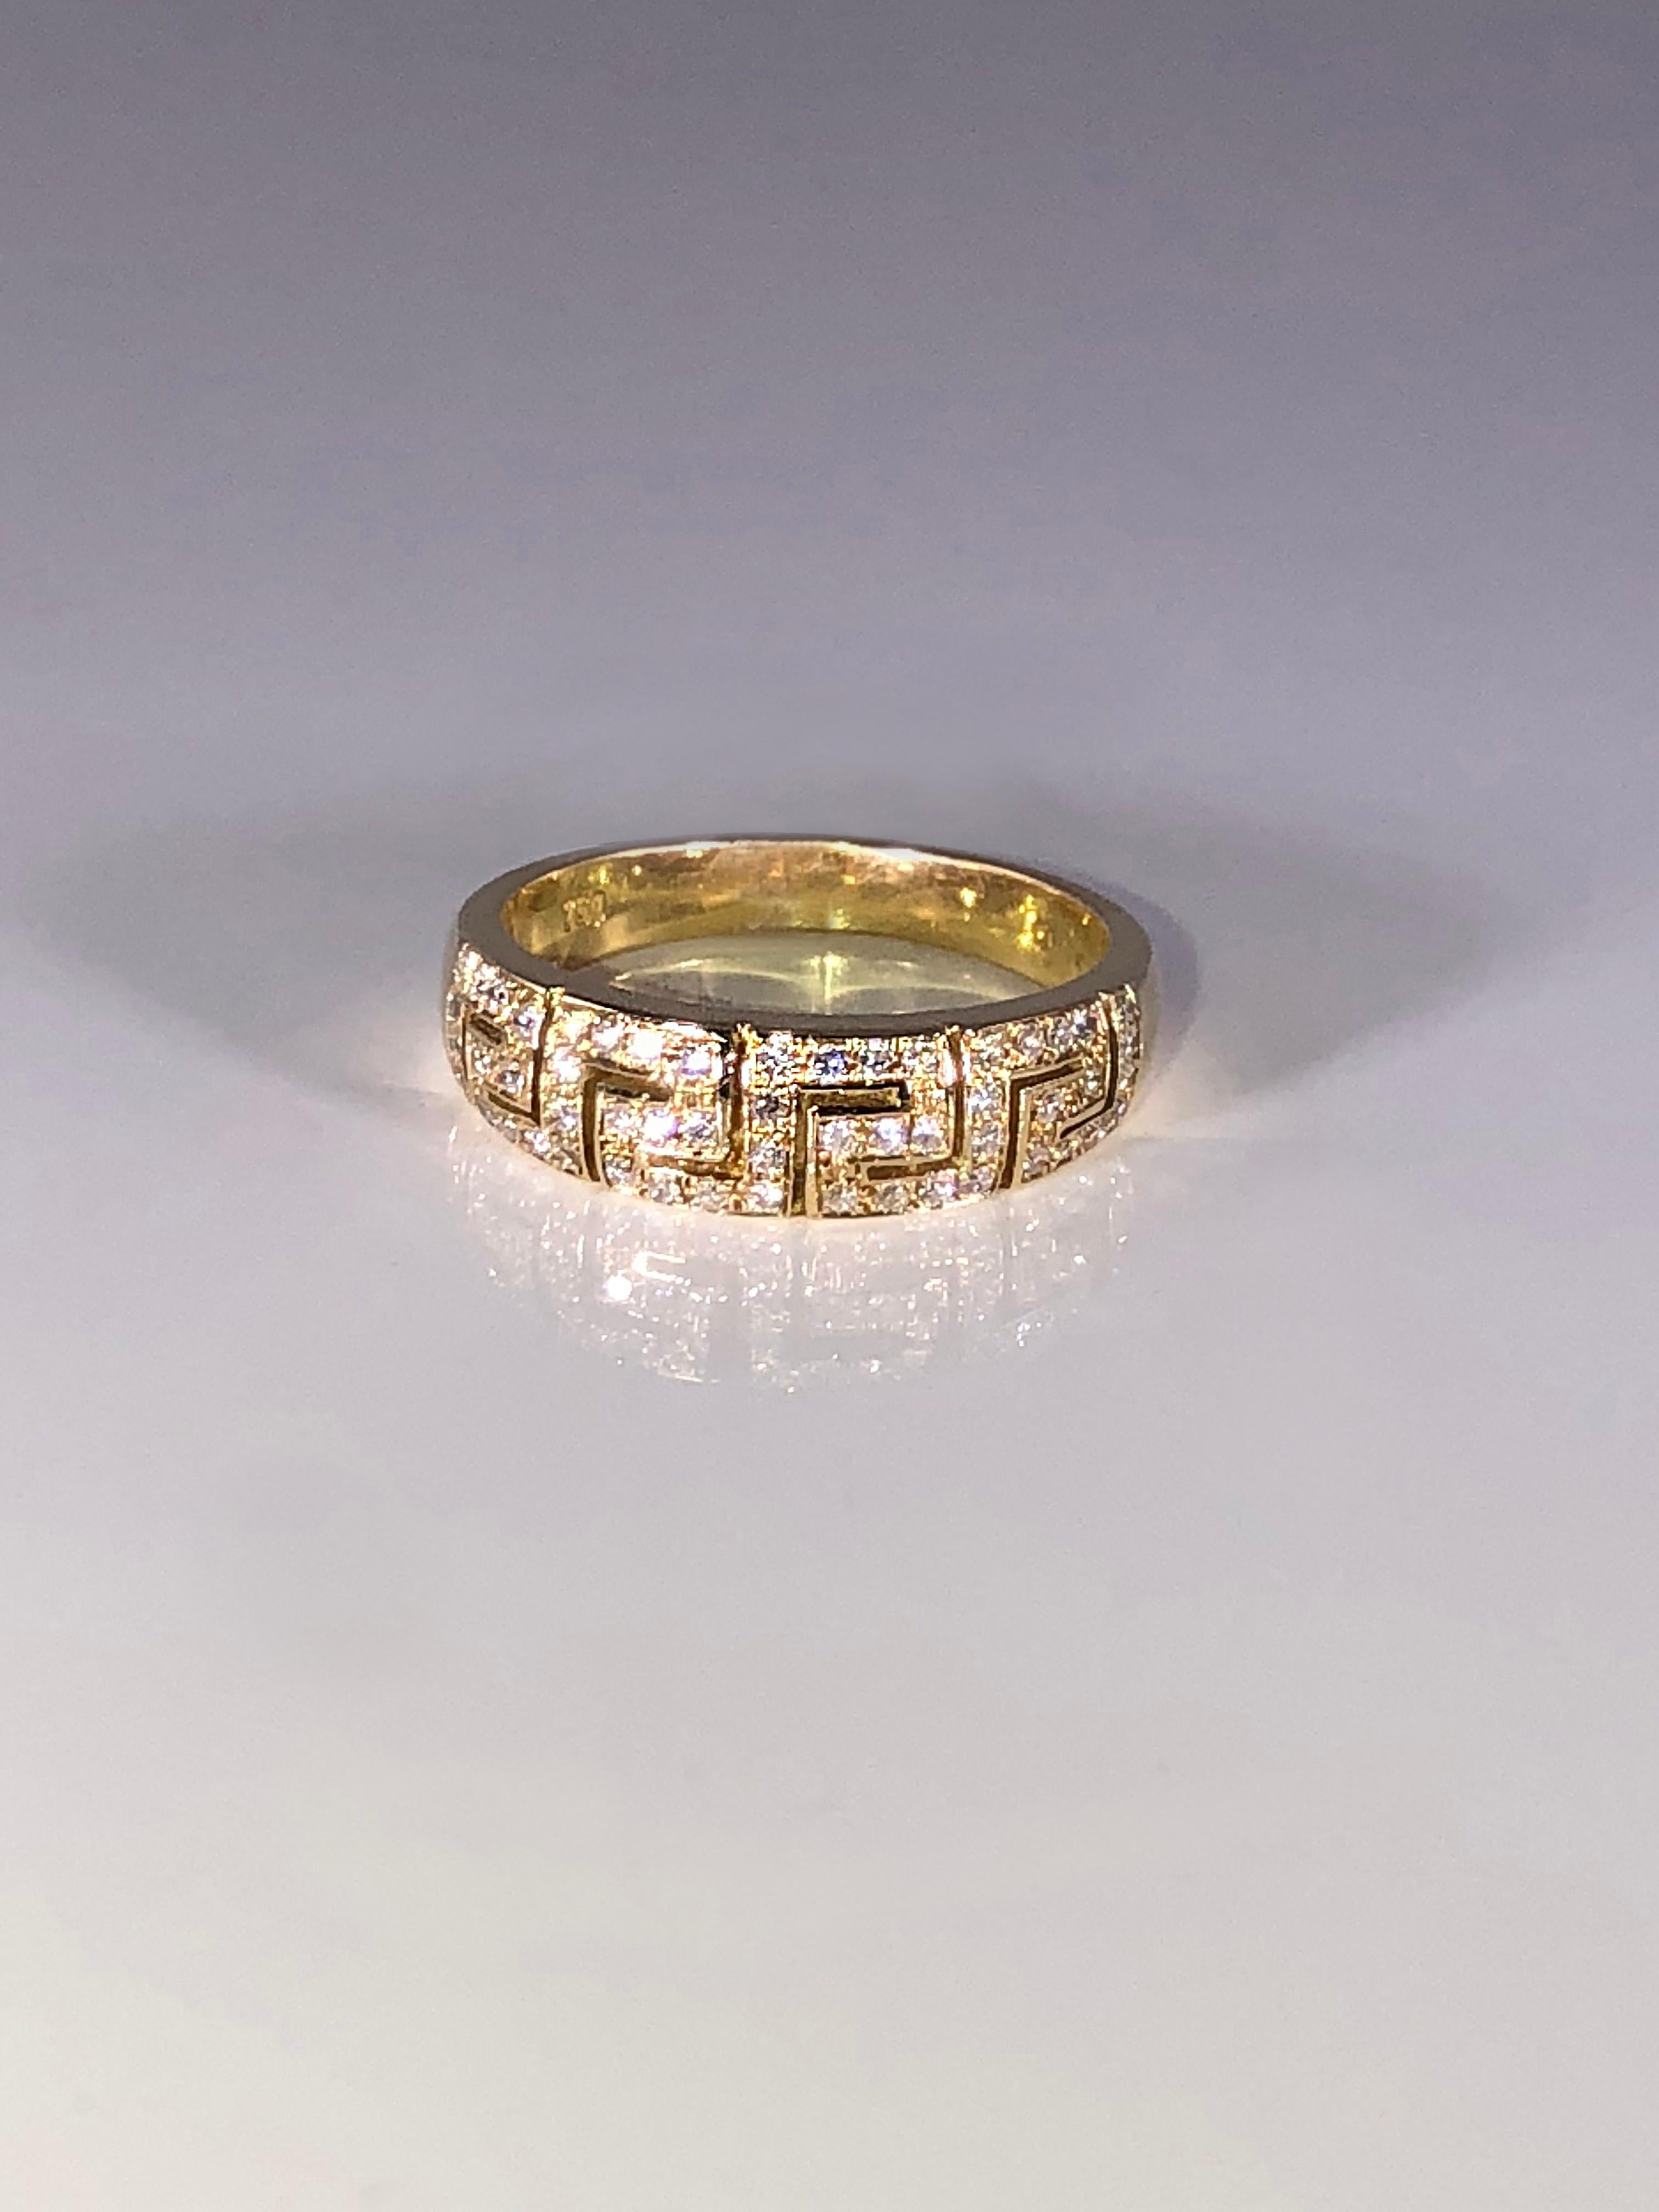 S. Georgios a conçu une bague en or jaune 18 carats faite à la main avec des diamants et un motif de clé grecque symbolisant l'éternité, le tout sur mesure. Il est connu comme le symbole d'une longue vie. 
Cette superbe bague est ornée de diamants